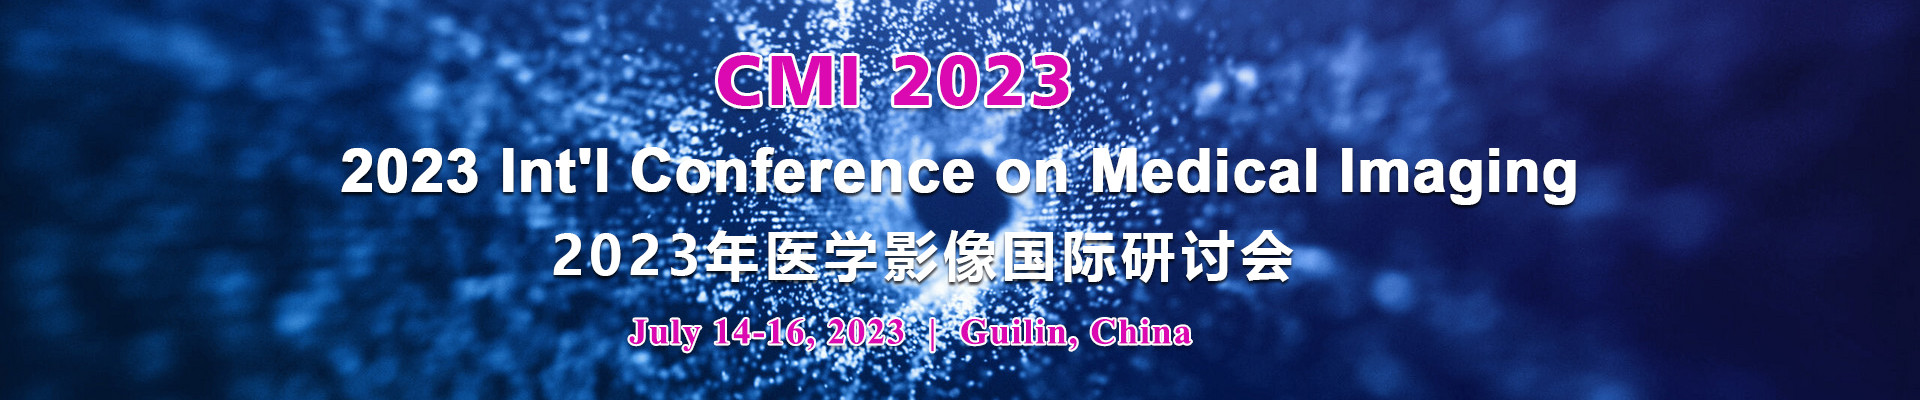 2023年医学影像国际研讨会 (CMI 2023) 